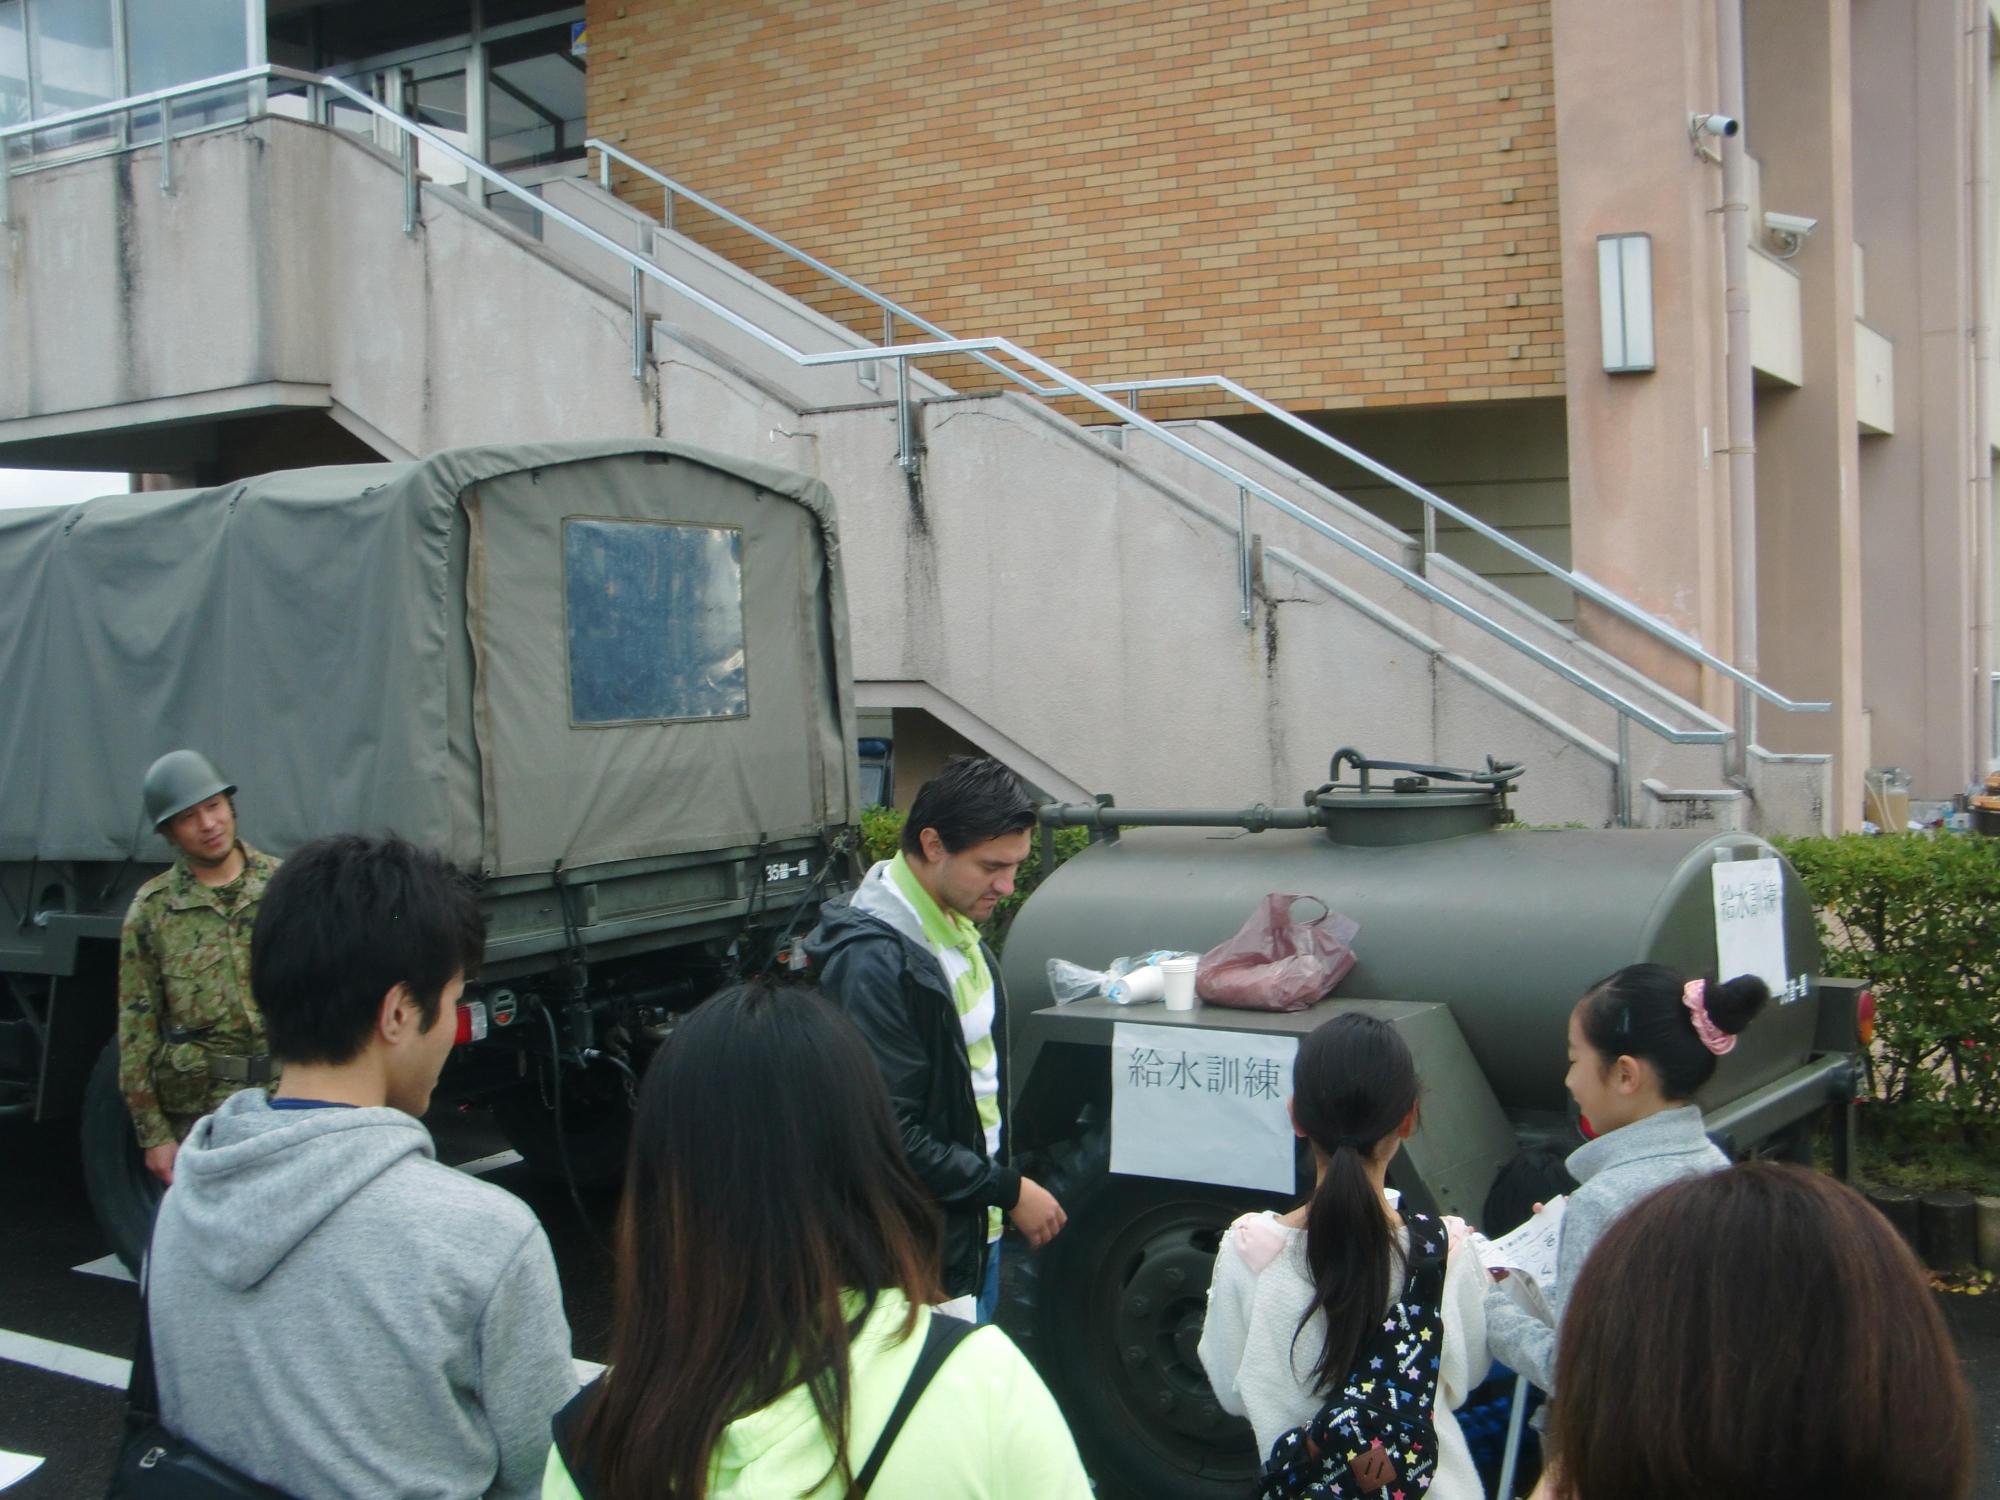 自衛隊の給水車の前に参加者たちが集まっている写真